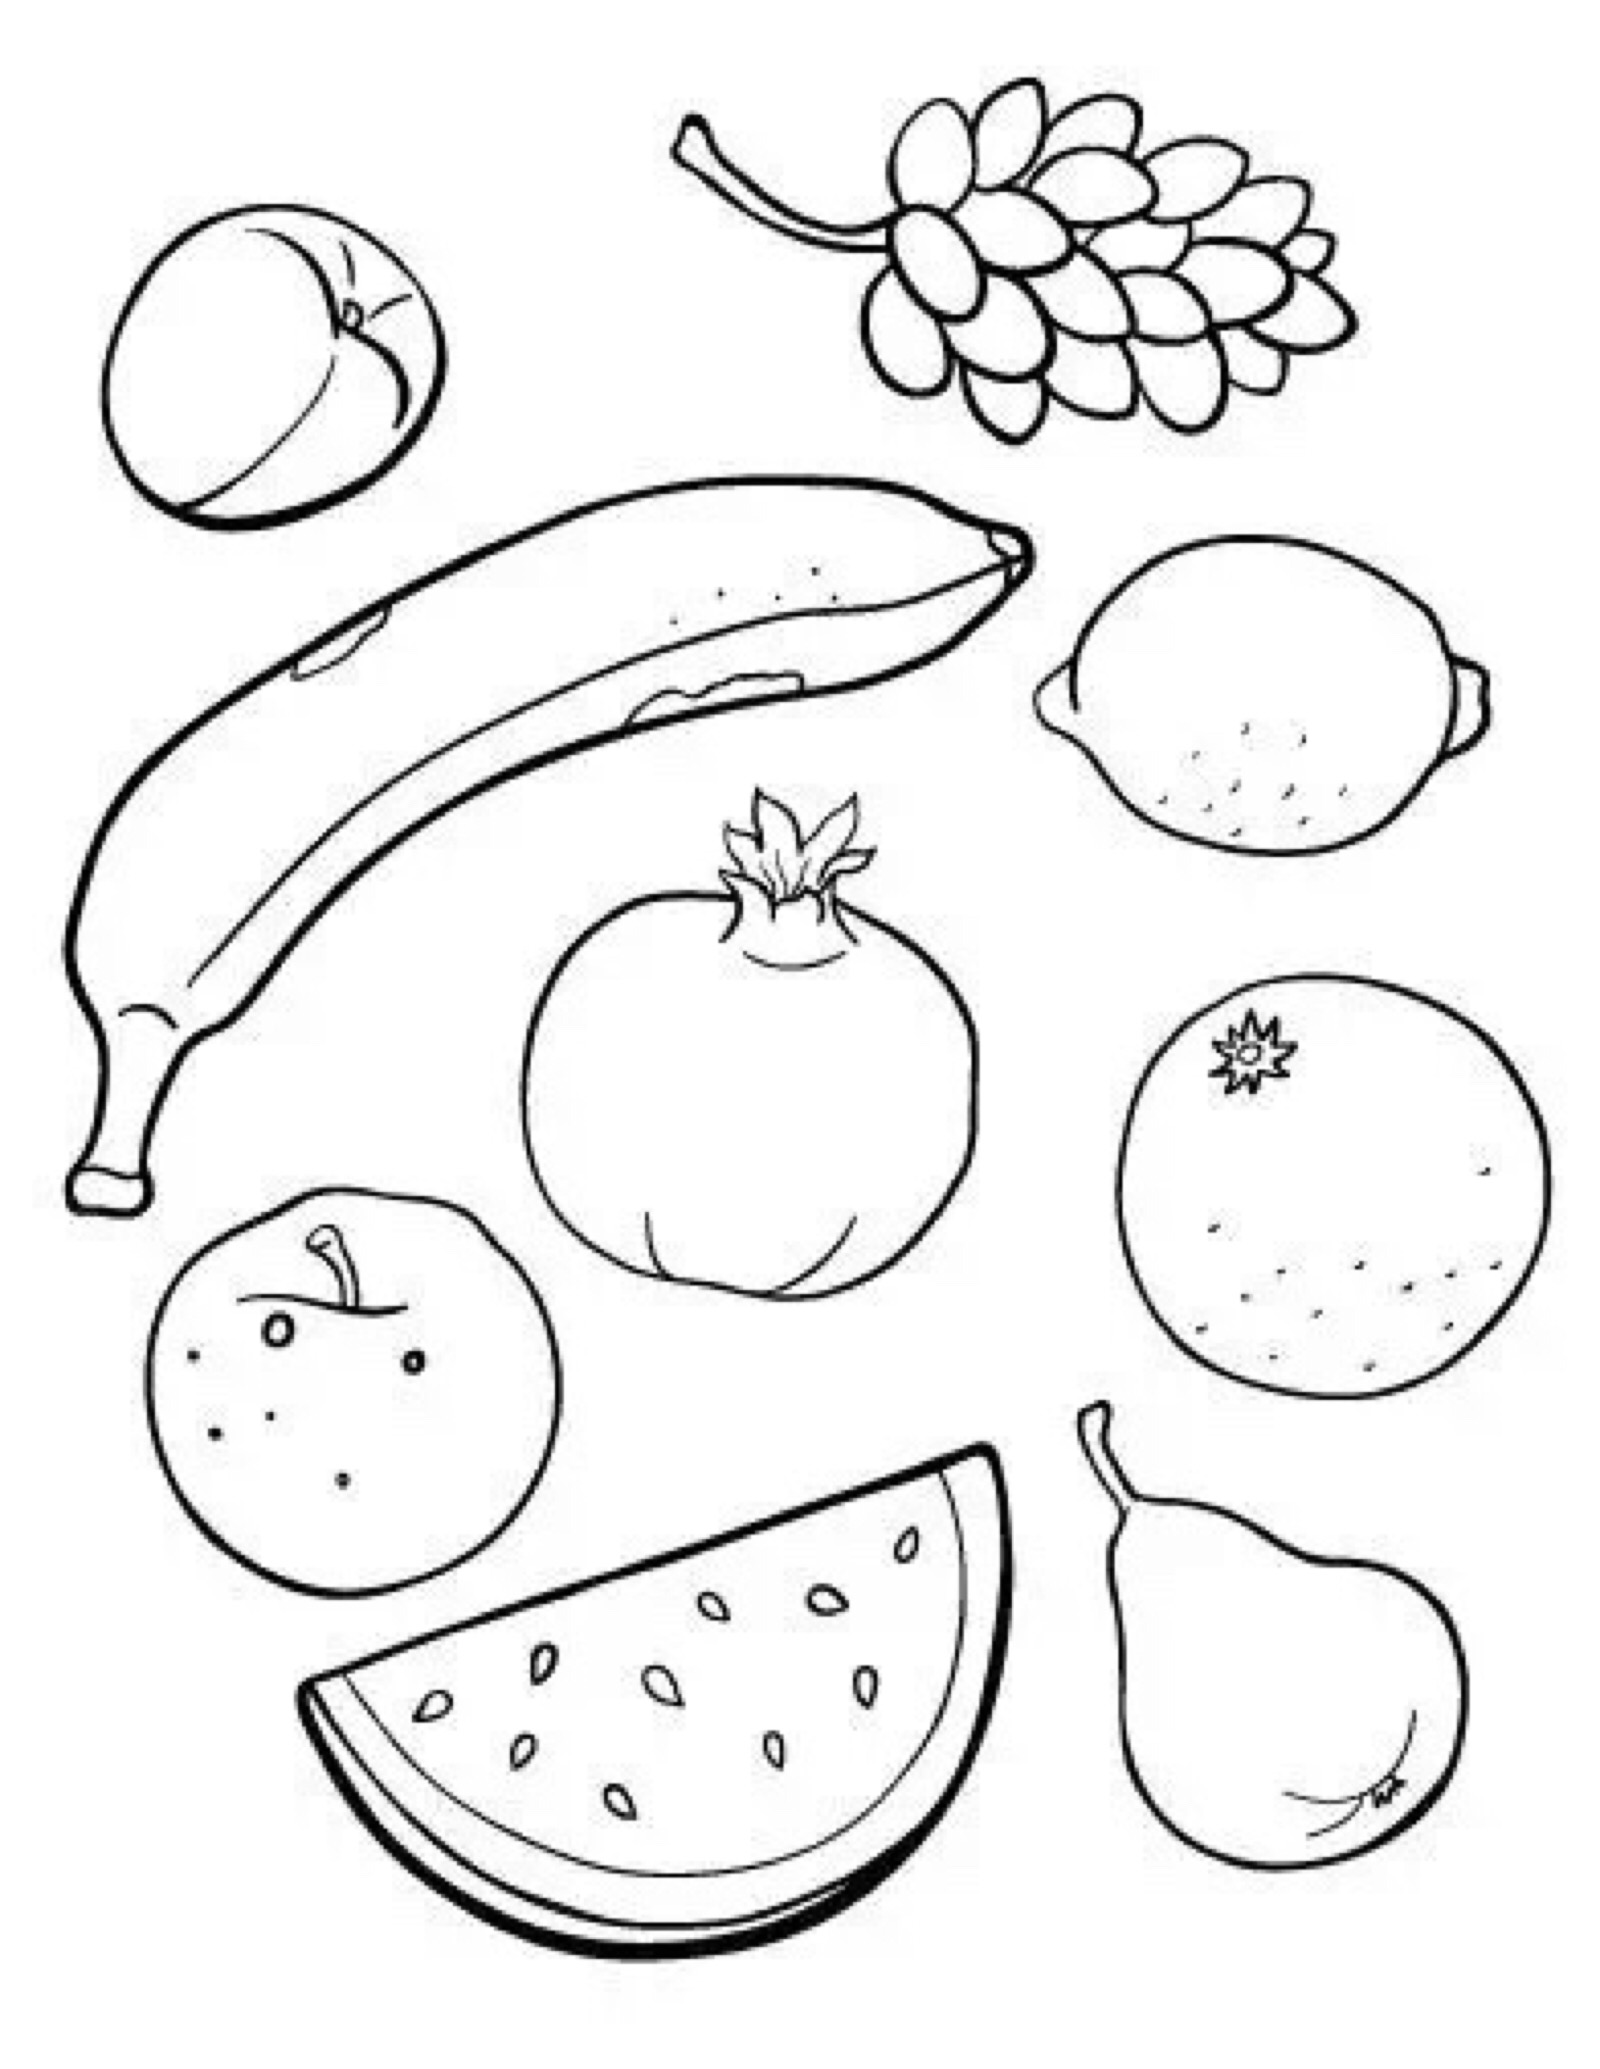 水果简画图图片